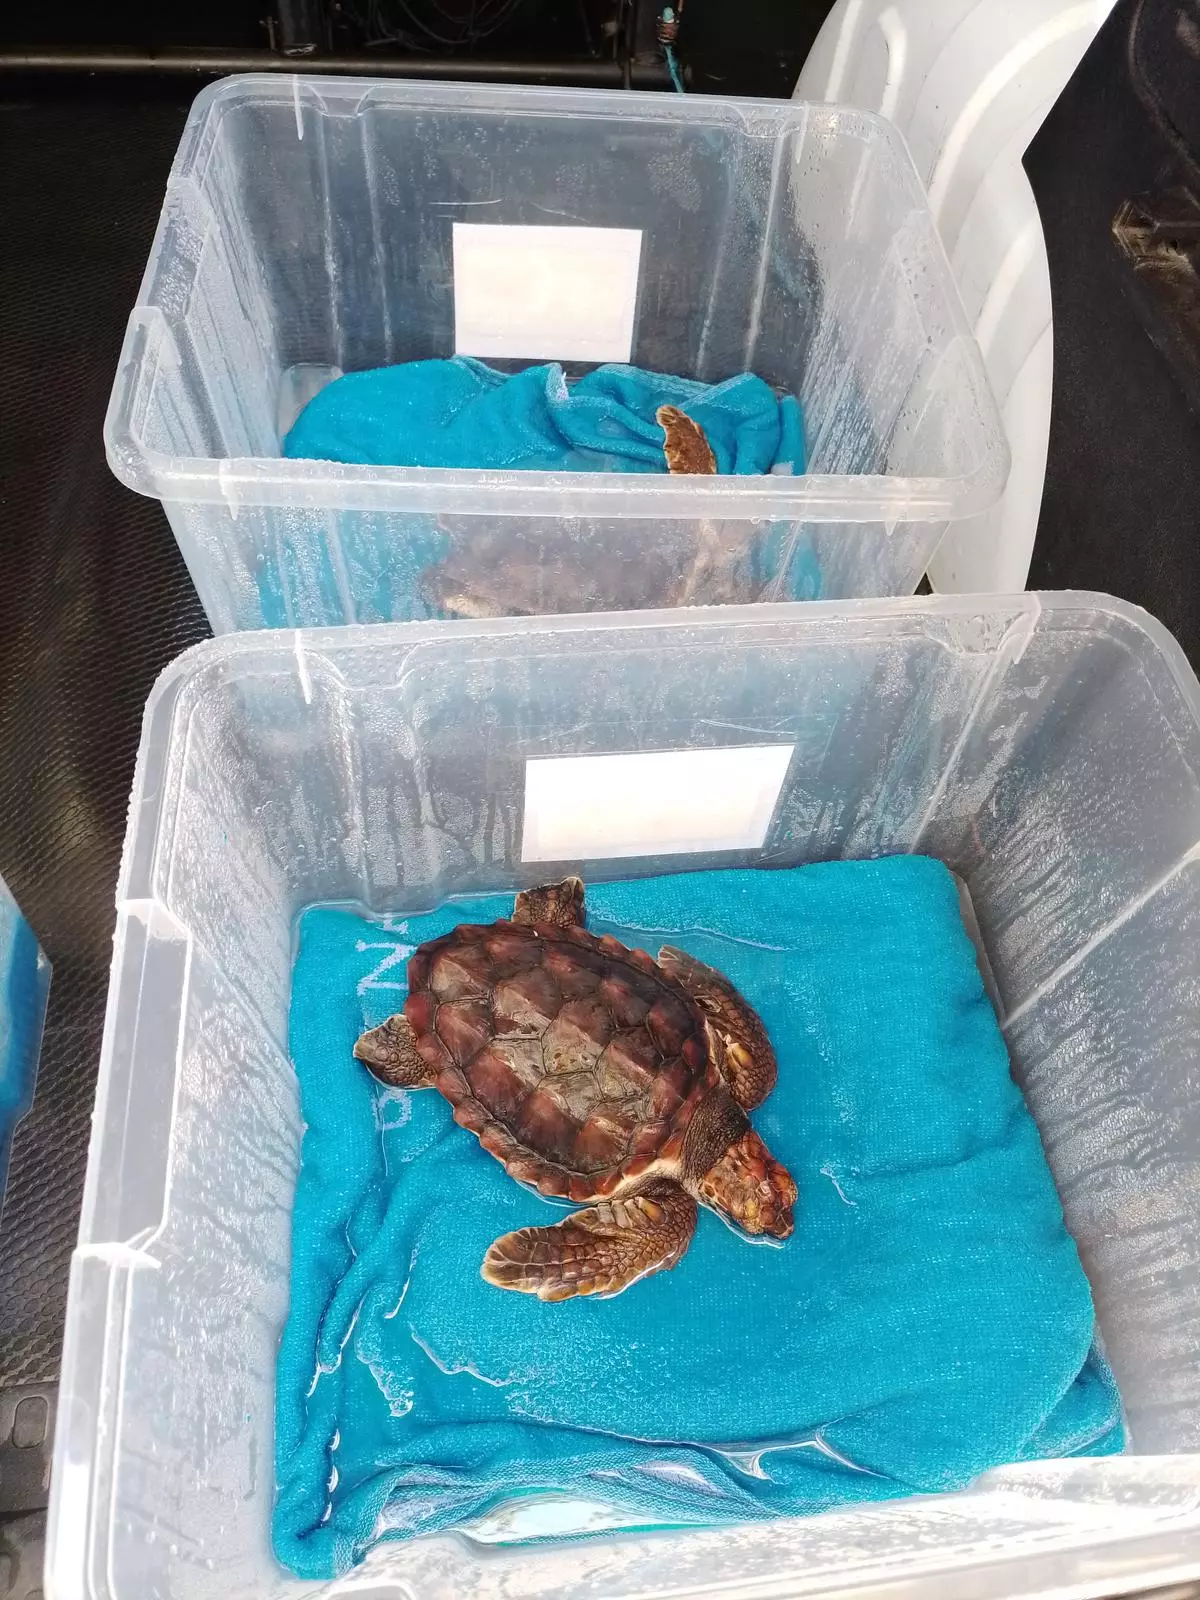 Cinco tortugas bobas nacidas en Marbella se fortalecen en Selwo Marina